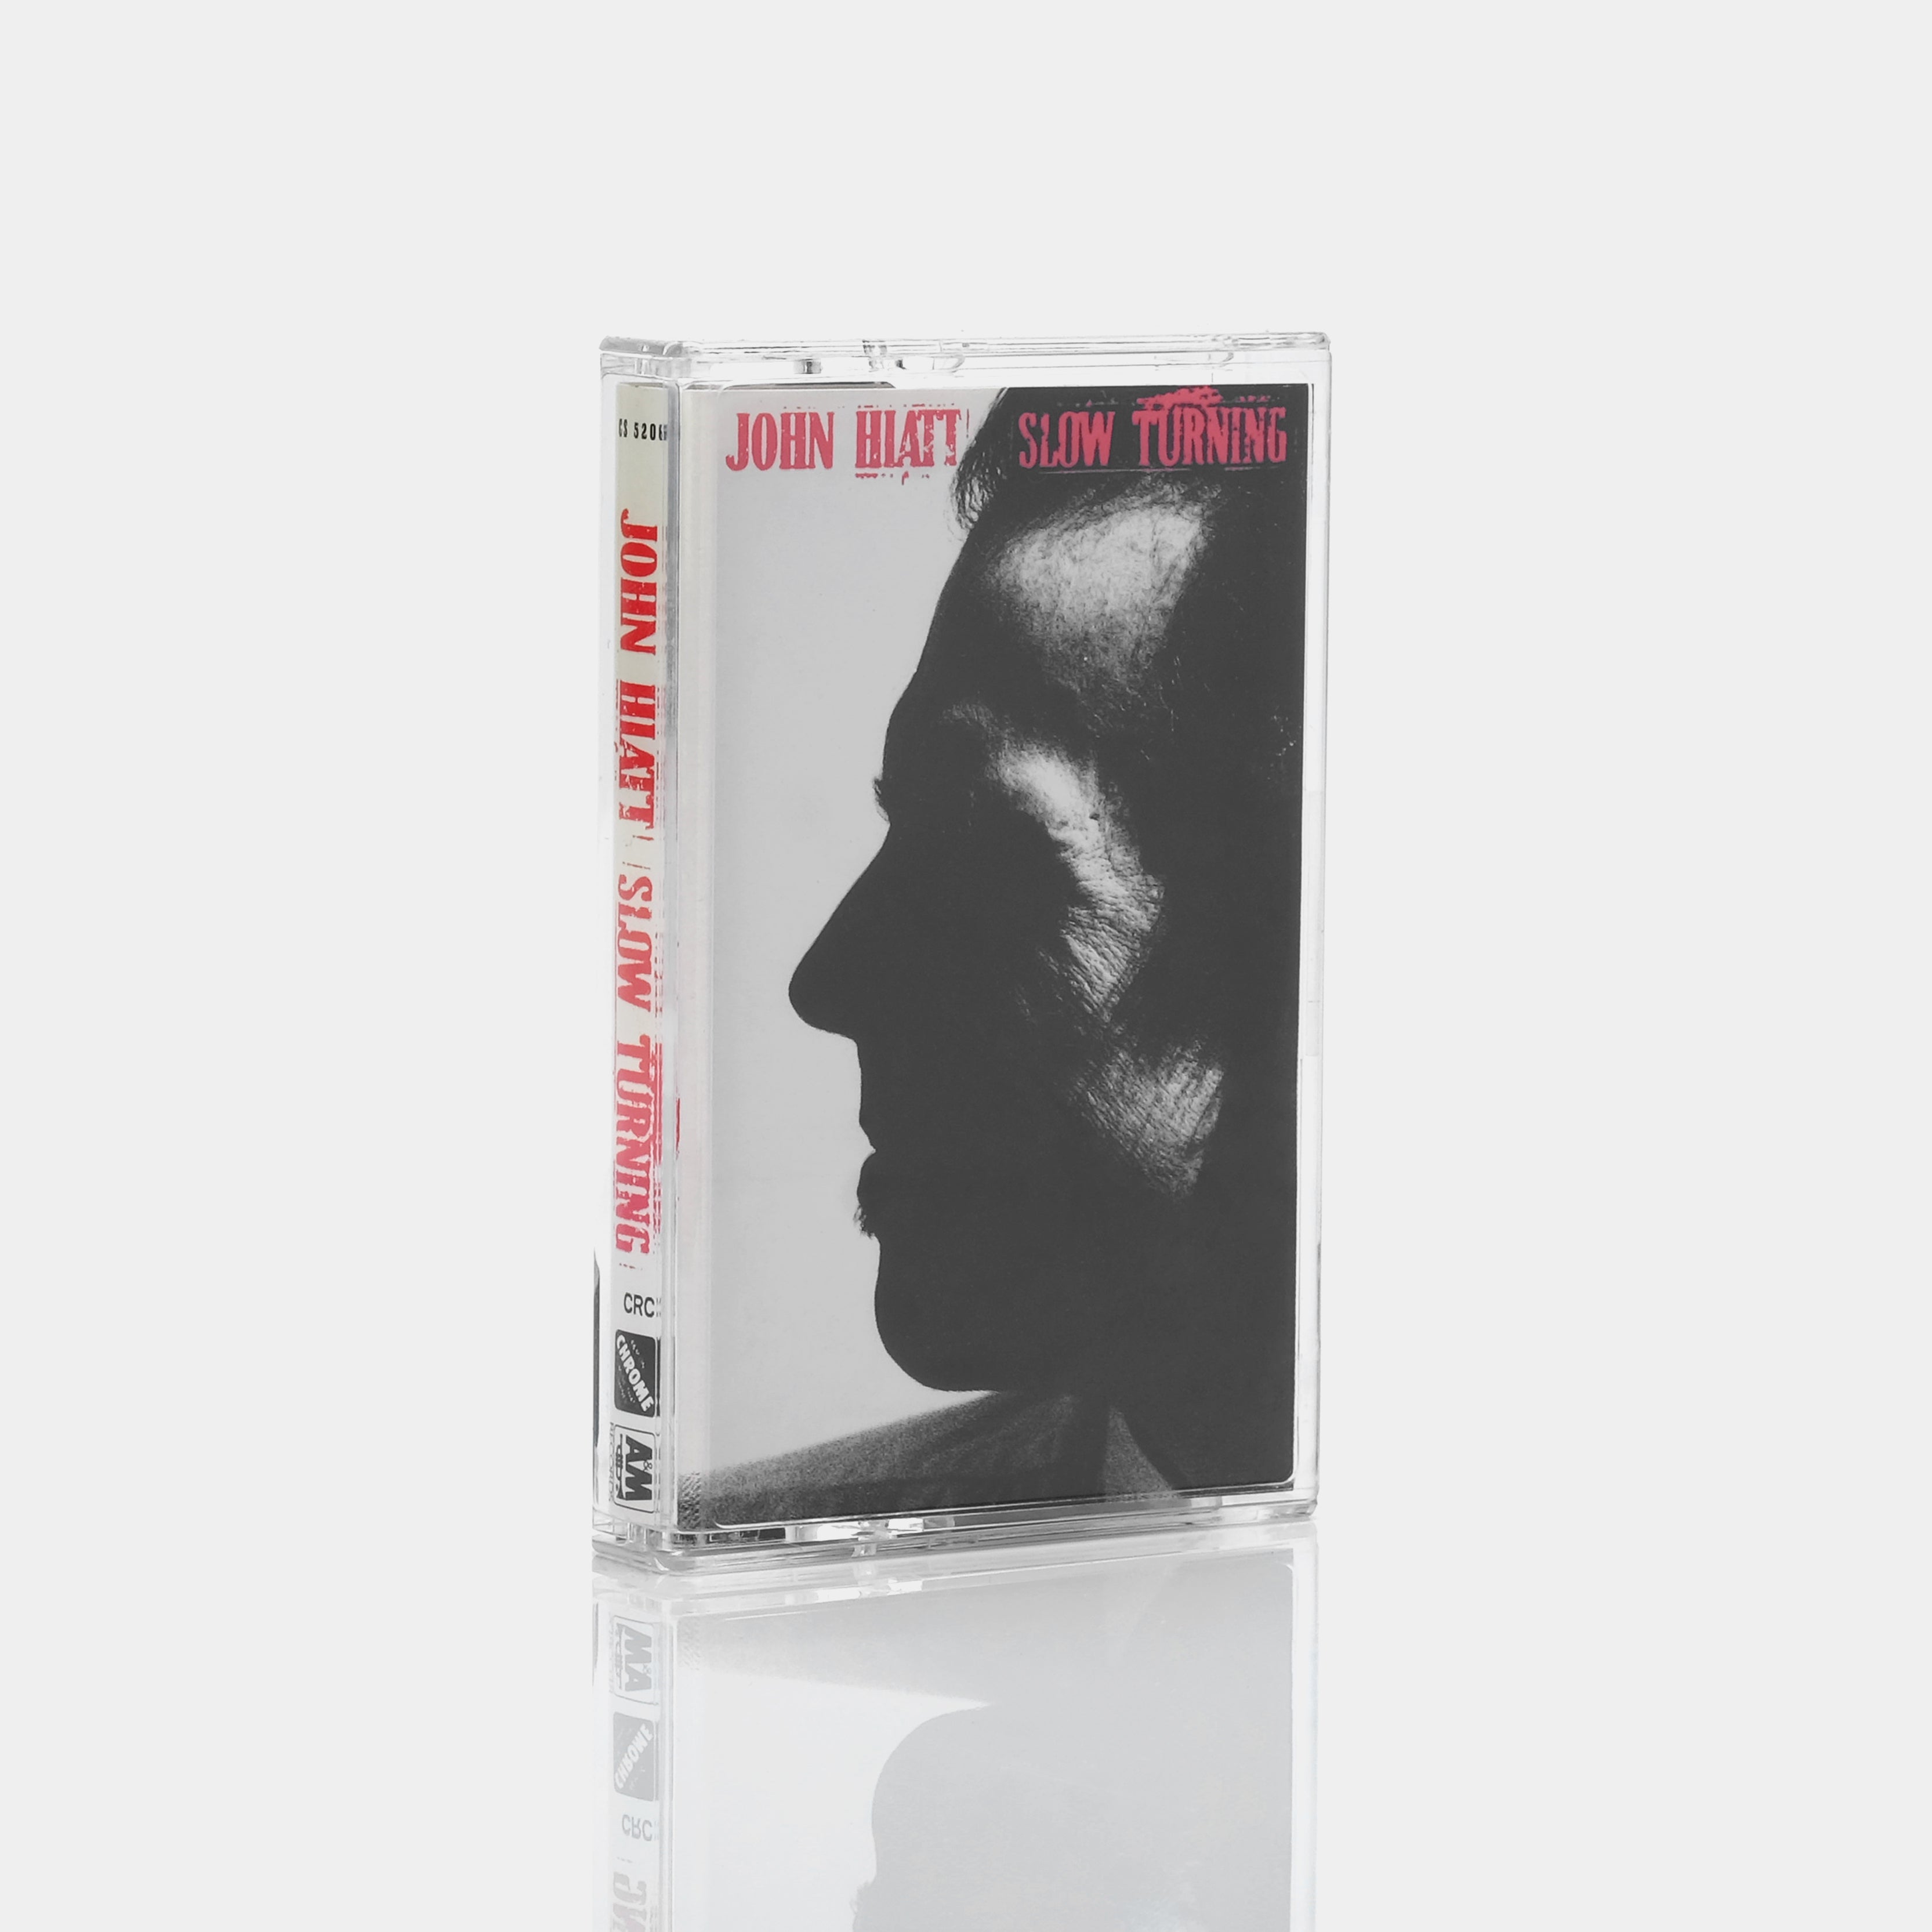 John Hiatt - Slow Turning Cassette Tape